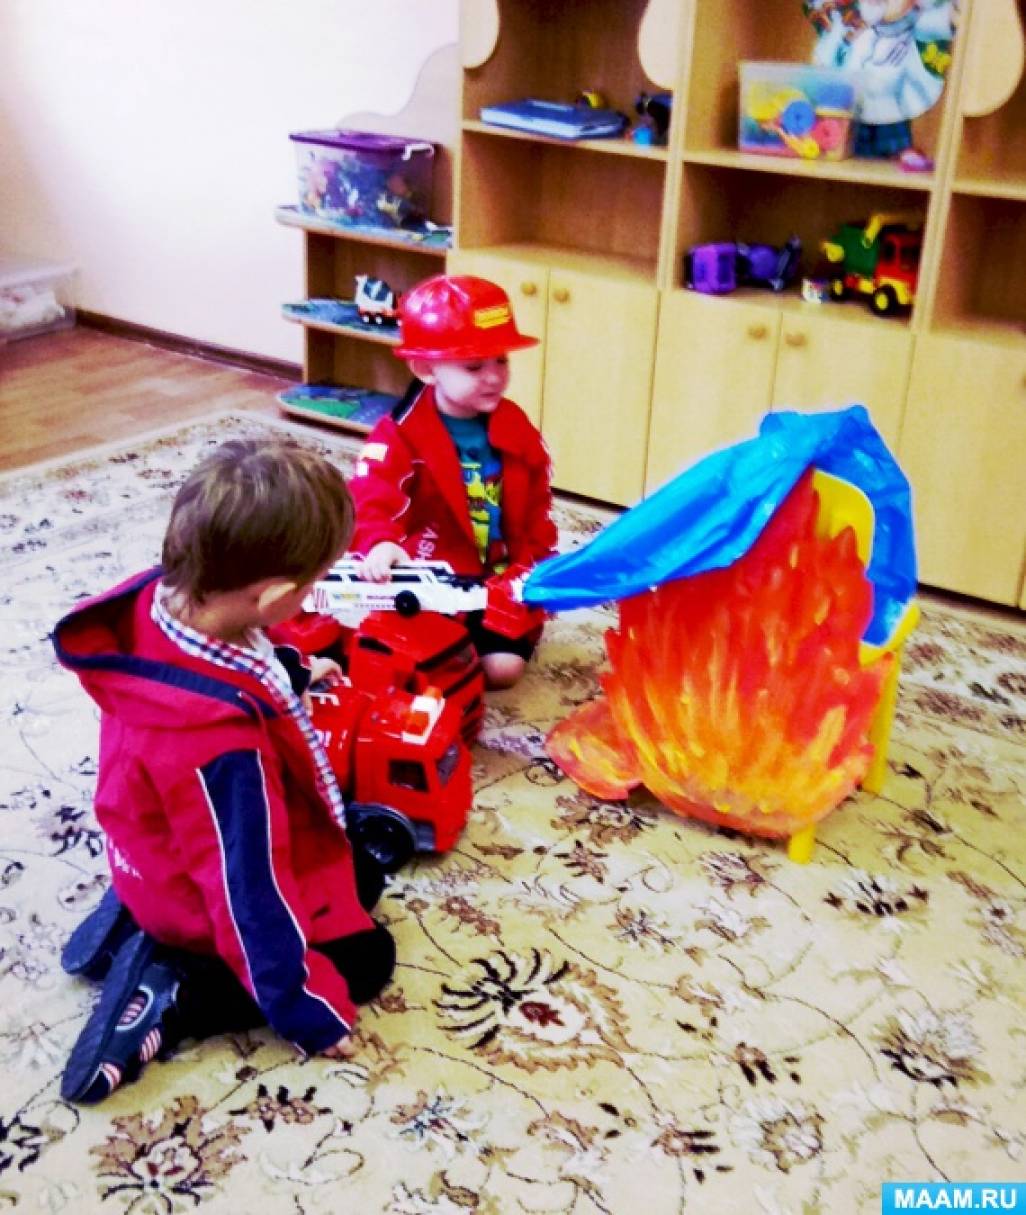 Развлечение по пожарной безопасности. Пожарная безопасность Первач младшая группа. Занятия в детском саду пожарная безопасность. Занятие с детьми по пожарной безопасности в детском саду. Пожарная безопасность во второй младшей группе.